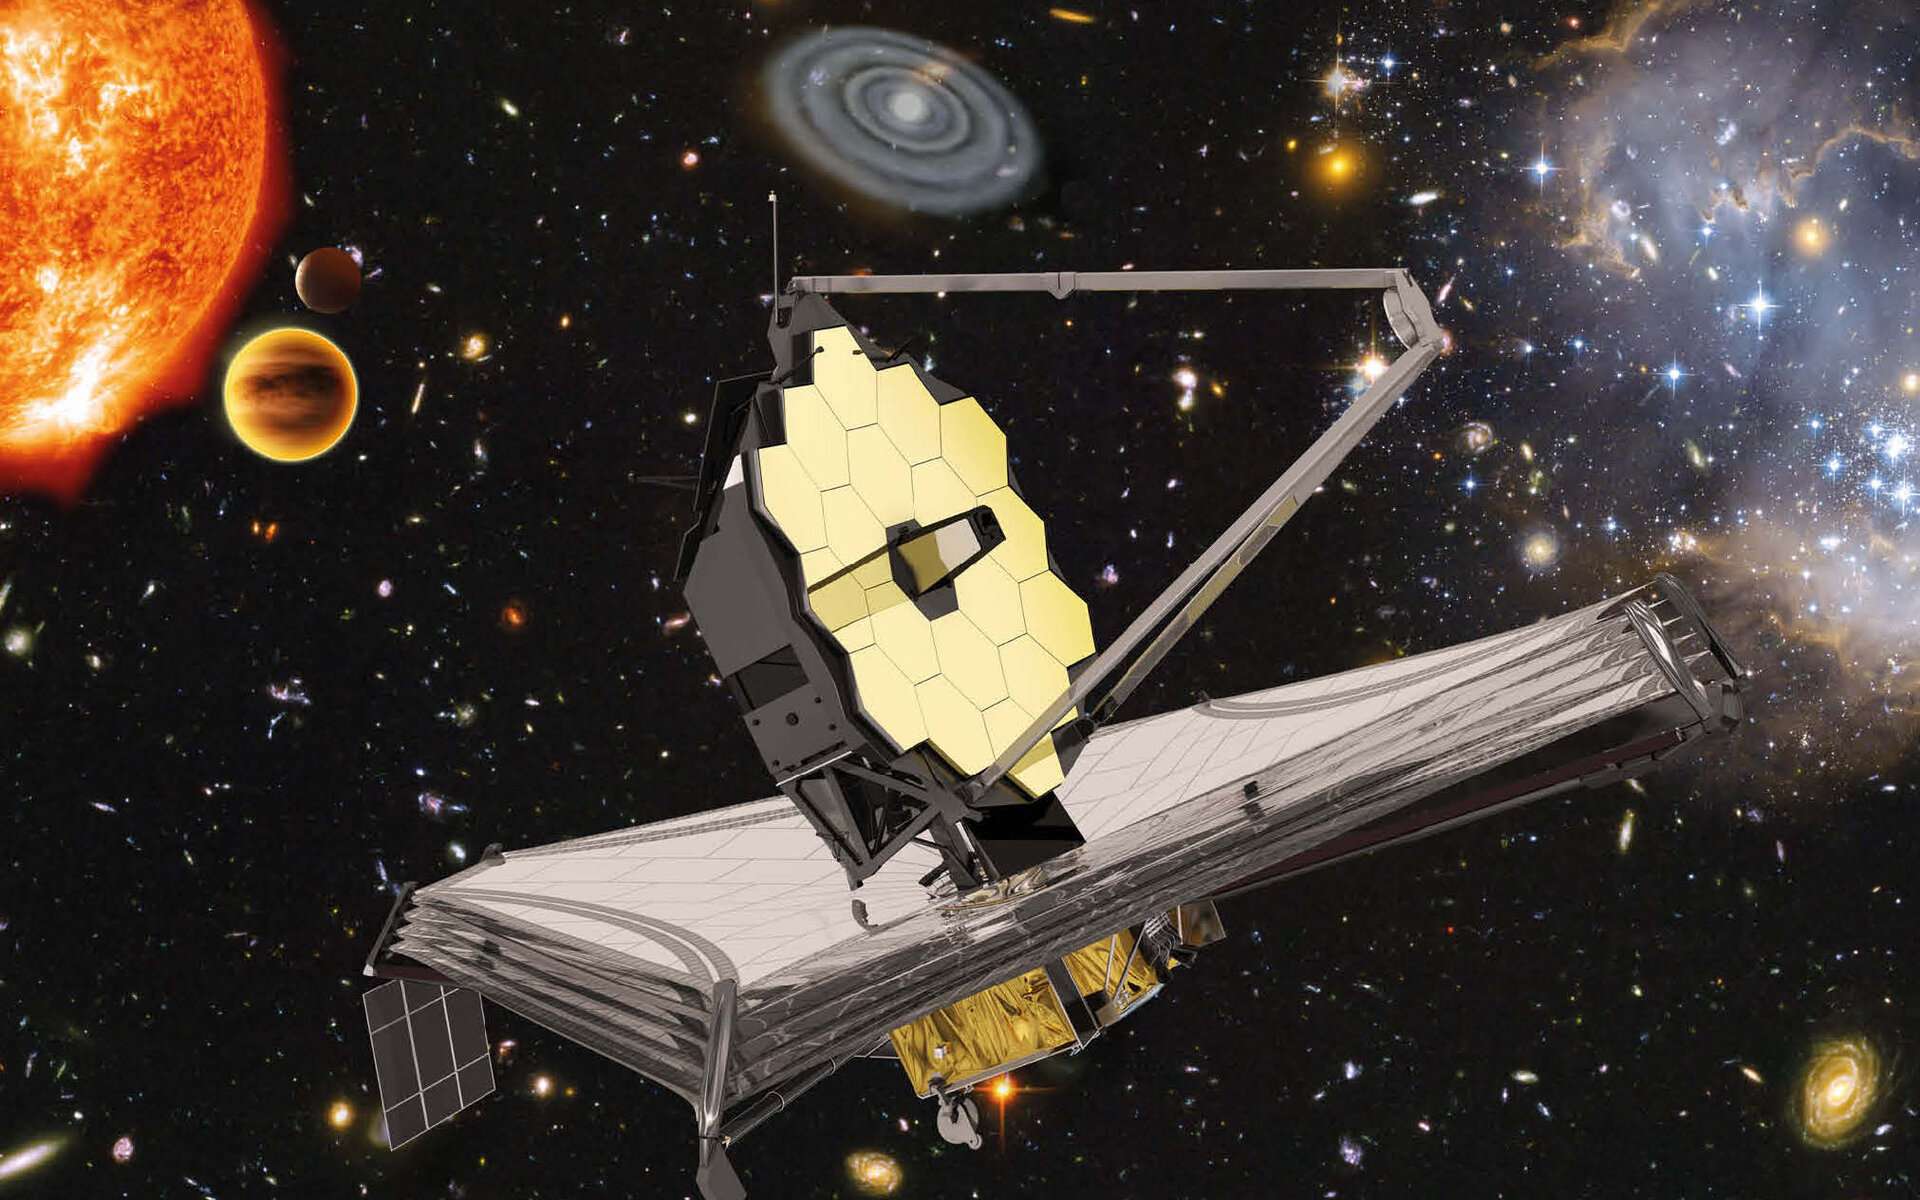 Vue d'artiste du télescope James-Webb, dont les capacités devraient révolutionner l'observation de l'espace. © ESA, Nasa, S. Beckwith